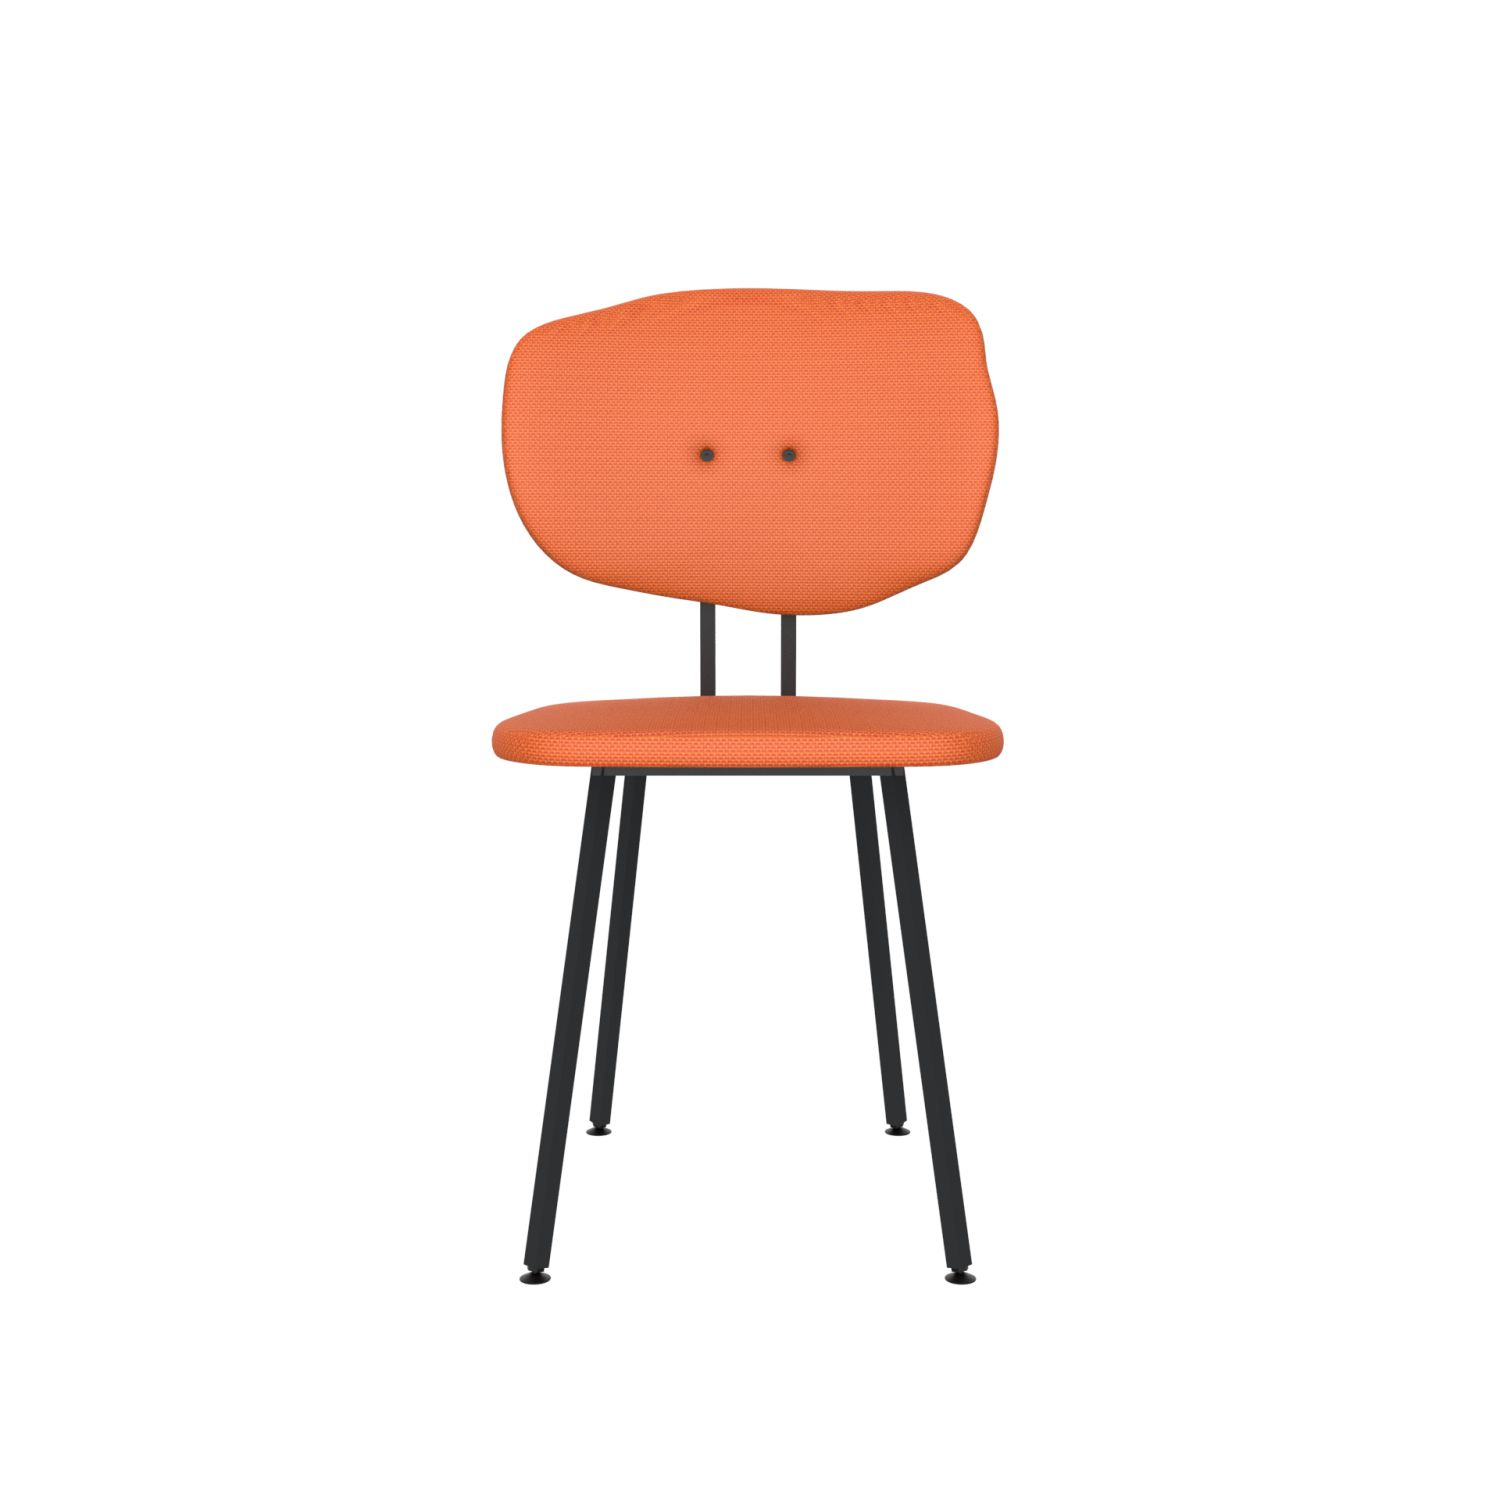 lensvelt maarten baas chair 101 not stackable without armrests backrest f burn orange 102 black ral9005 hard leg ends